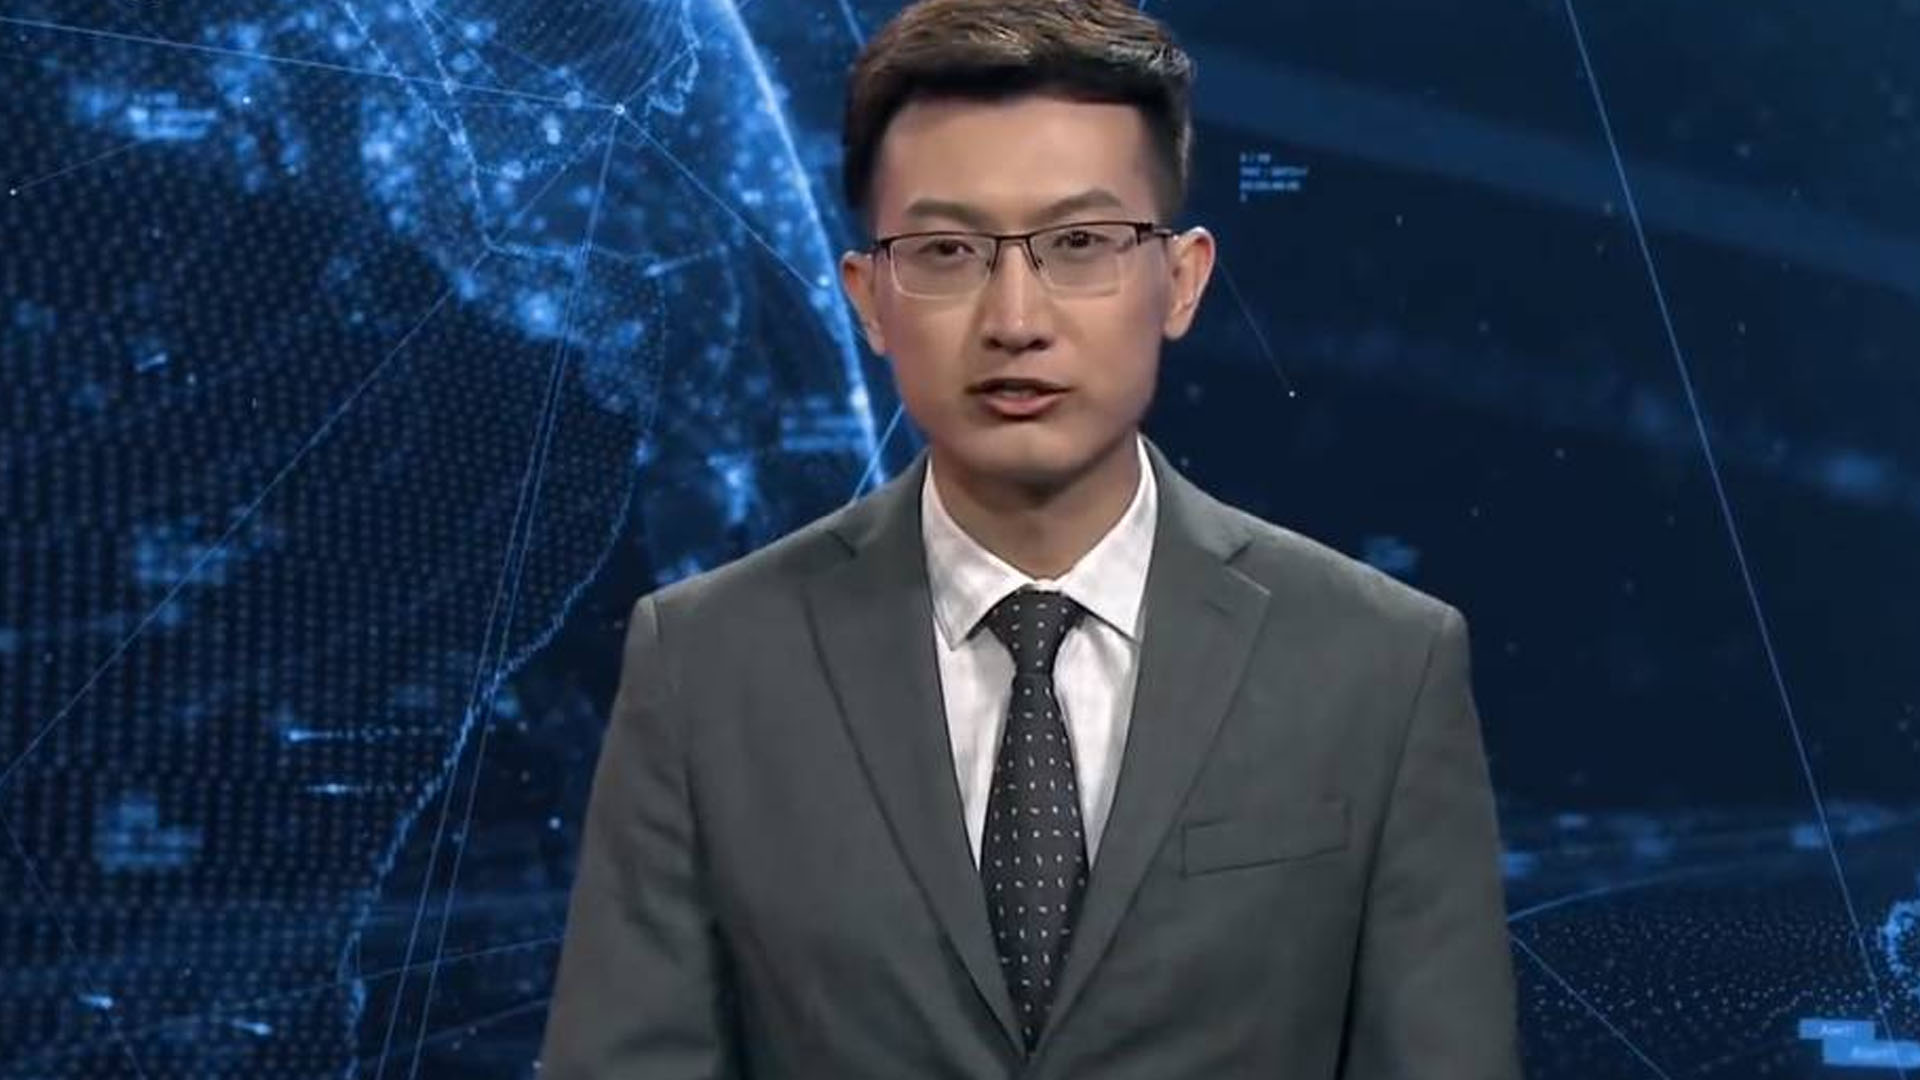 El primer presentador virtual pestañea, se mueve ligeramente y tiene una apariencia totalmente humana (Foto: @NewChinaTV)